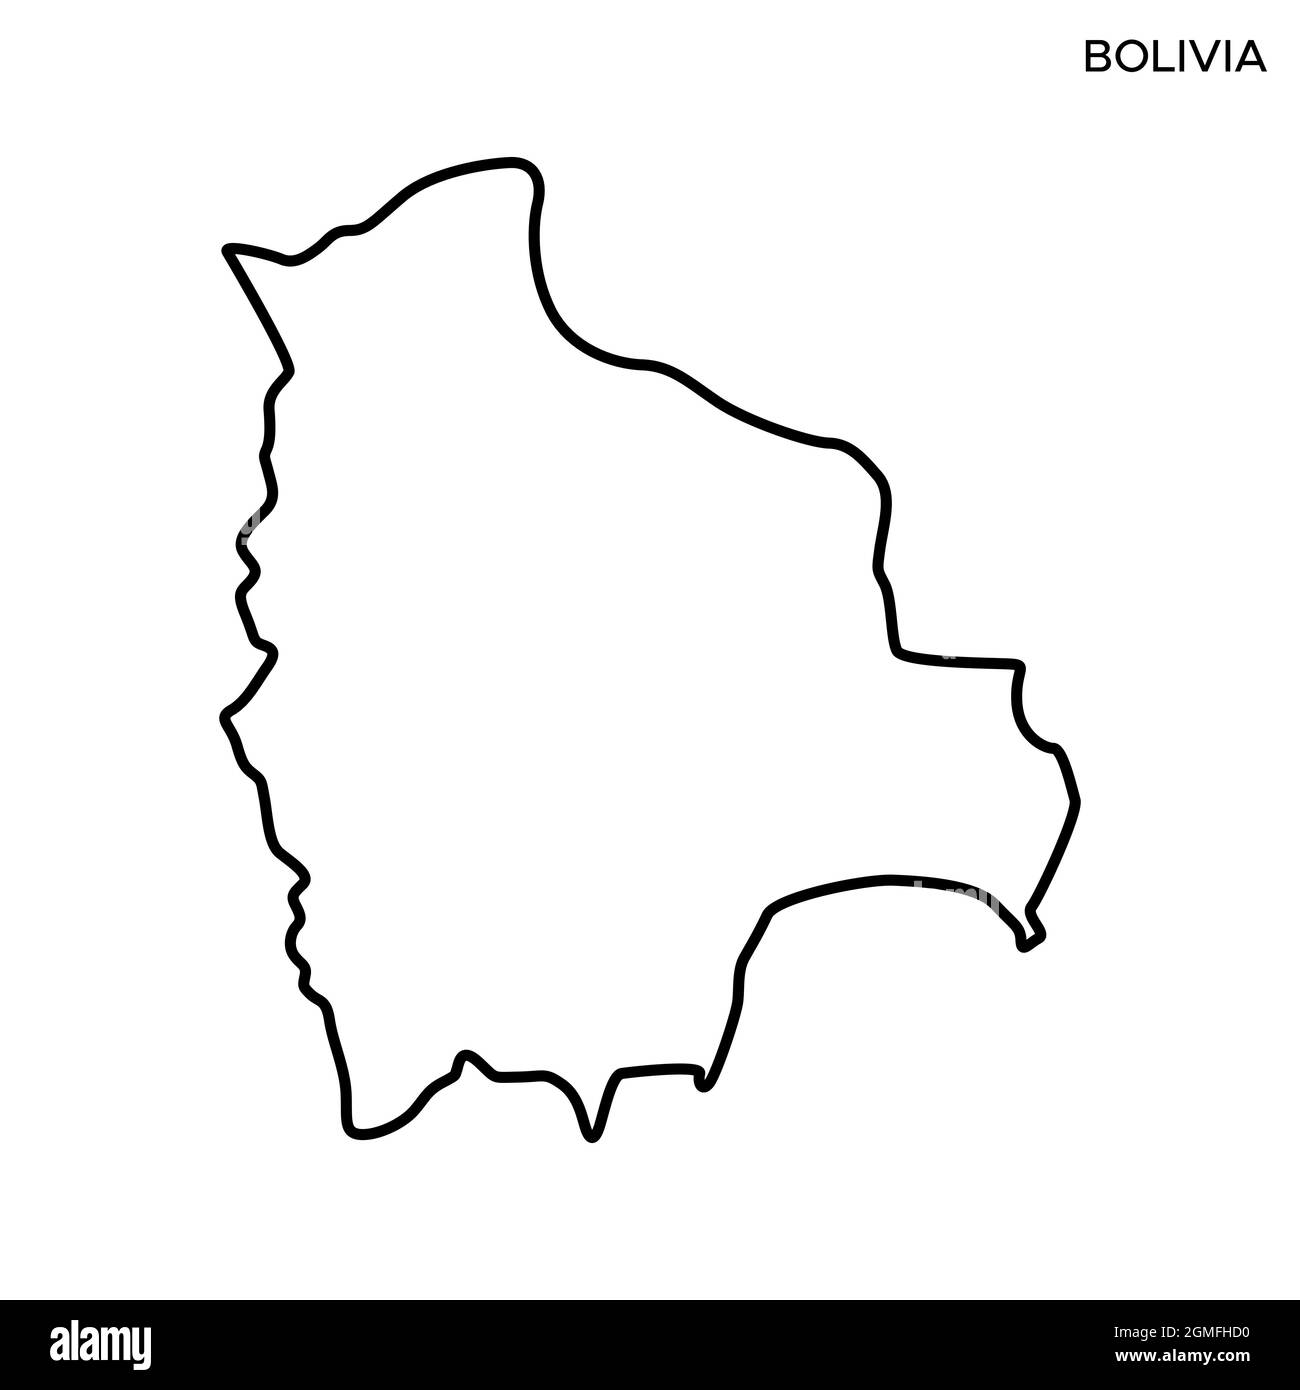 Carte linéaire du modèle de dessin d'illustration de vecteur Bolivie. Contour modifiable. Vecteur eps 10. Illustration de Vecteur